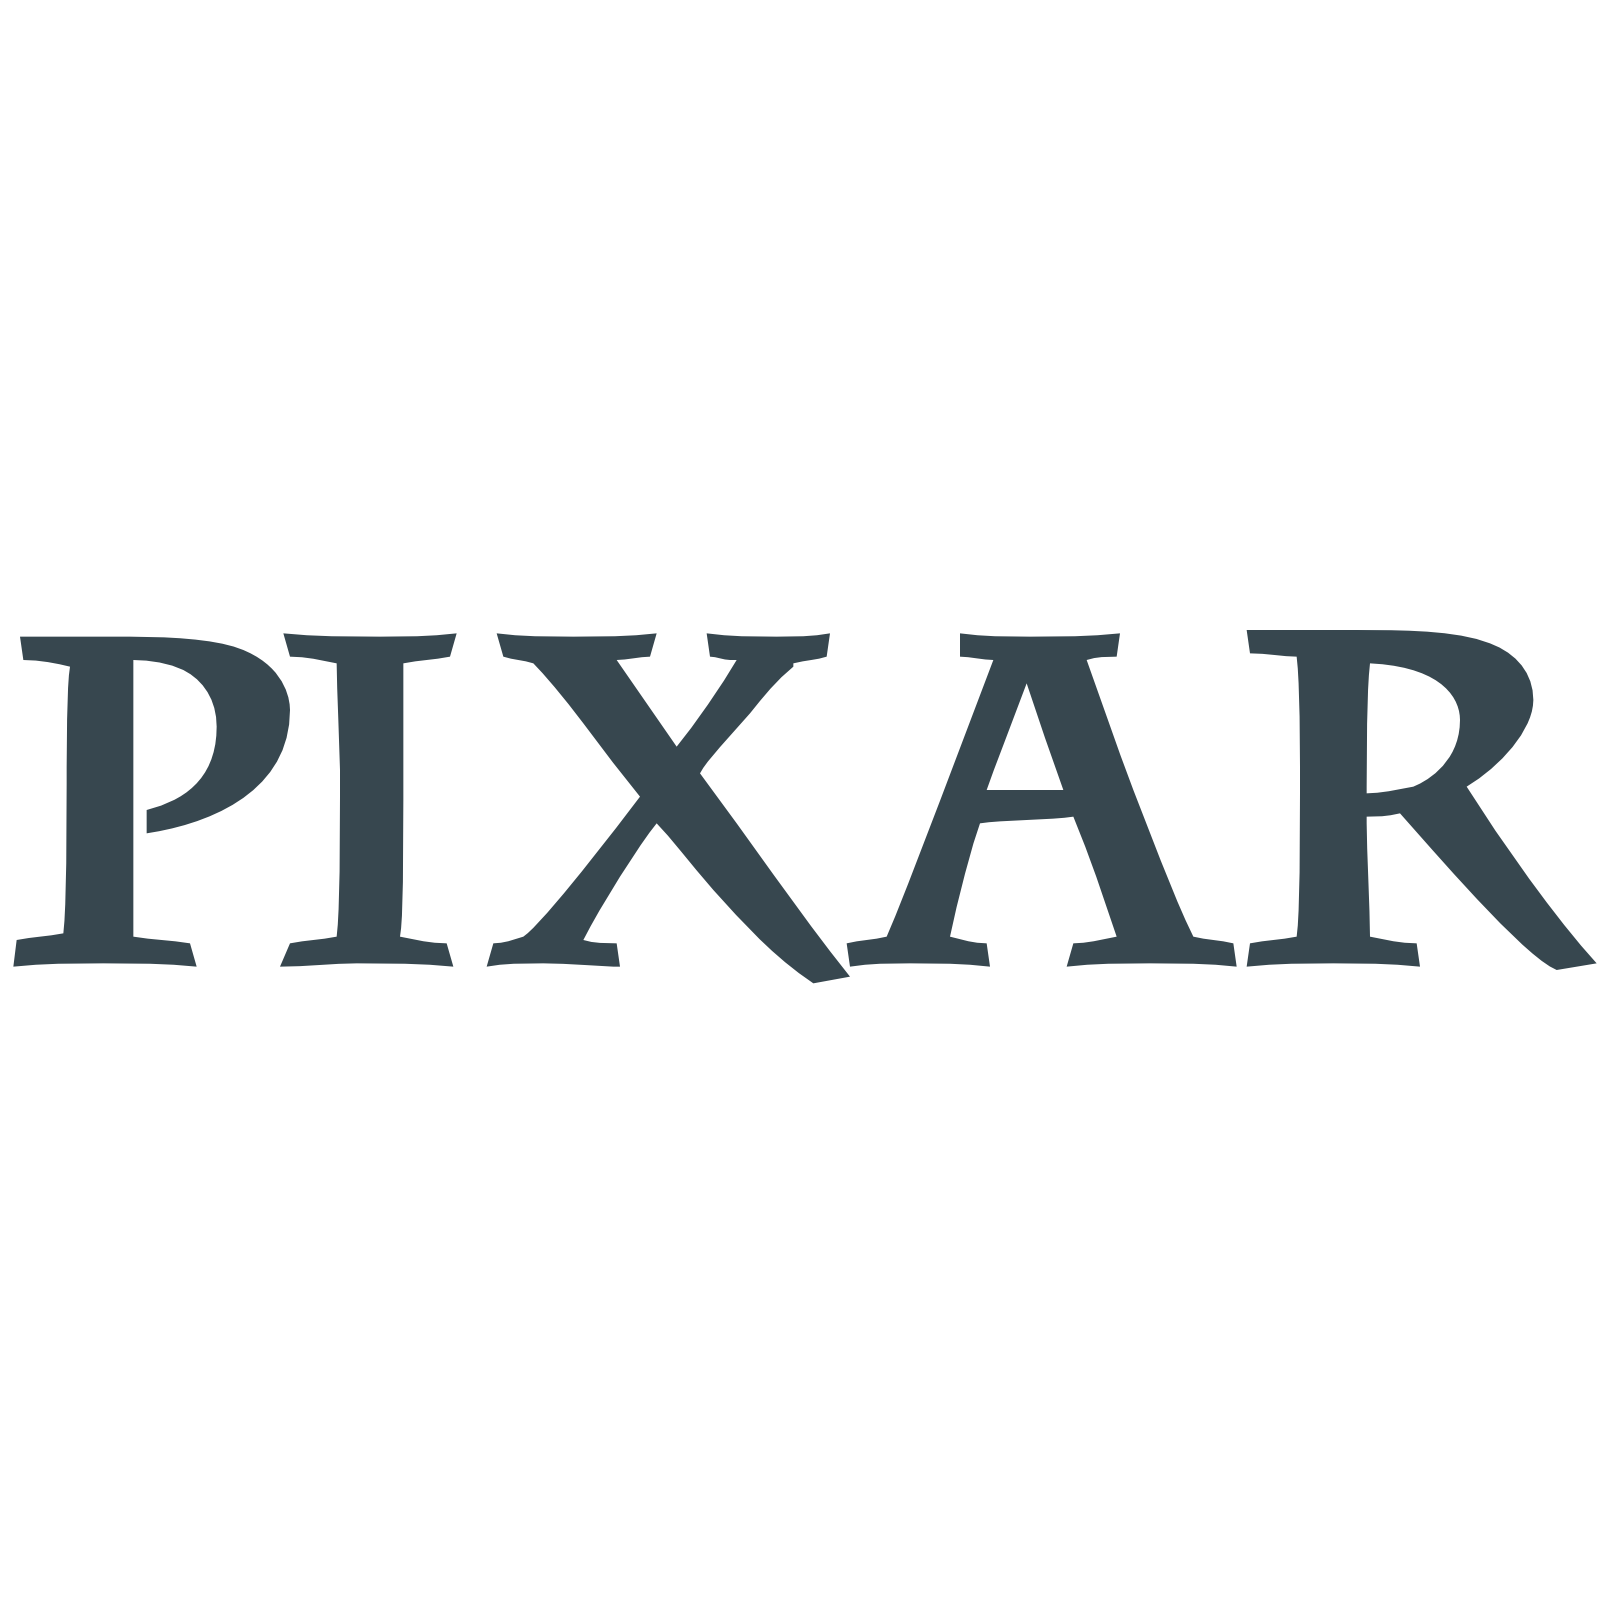 Pixar logo. Пиксар логотип. Кинокомпания Пиксар. Студия Pixar логотип. Пиксар надпись.